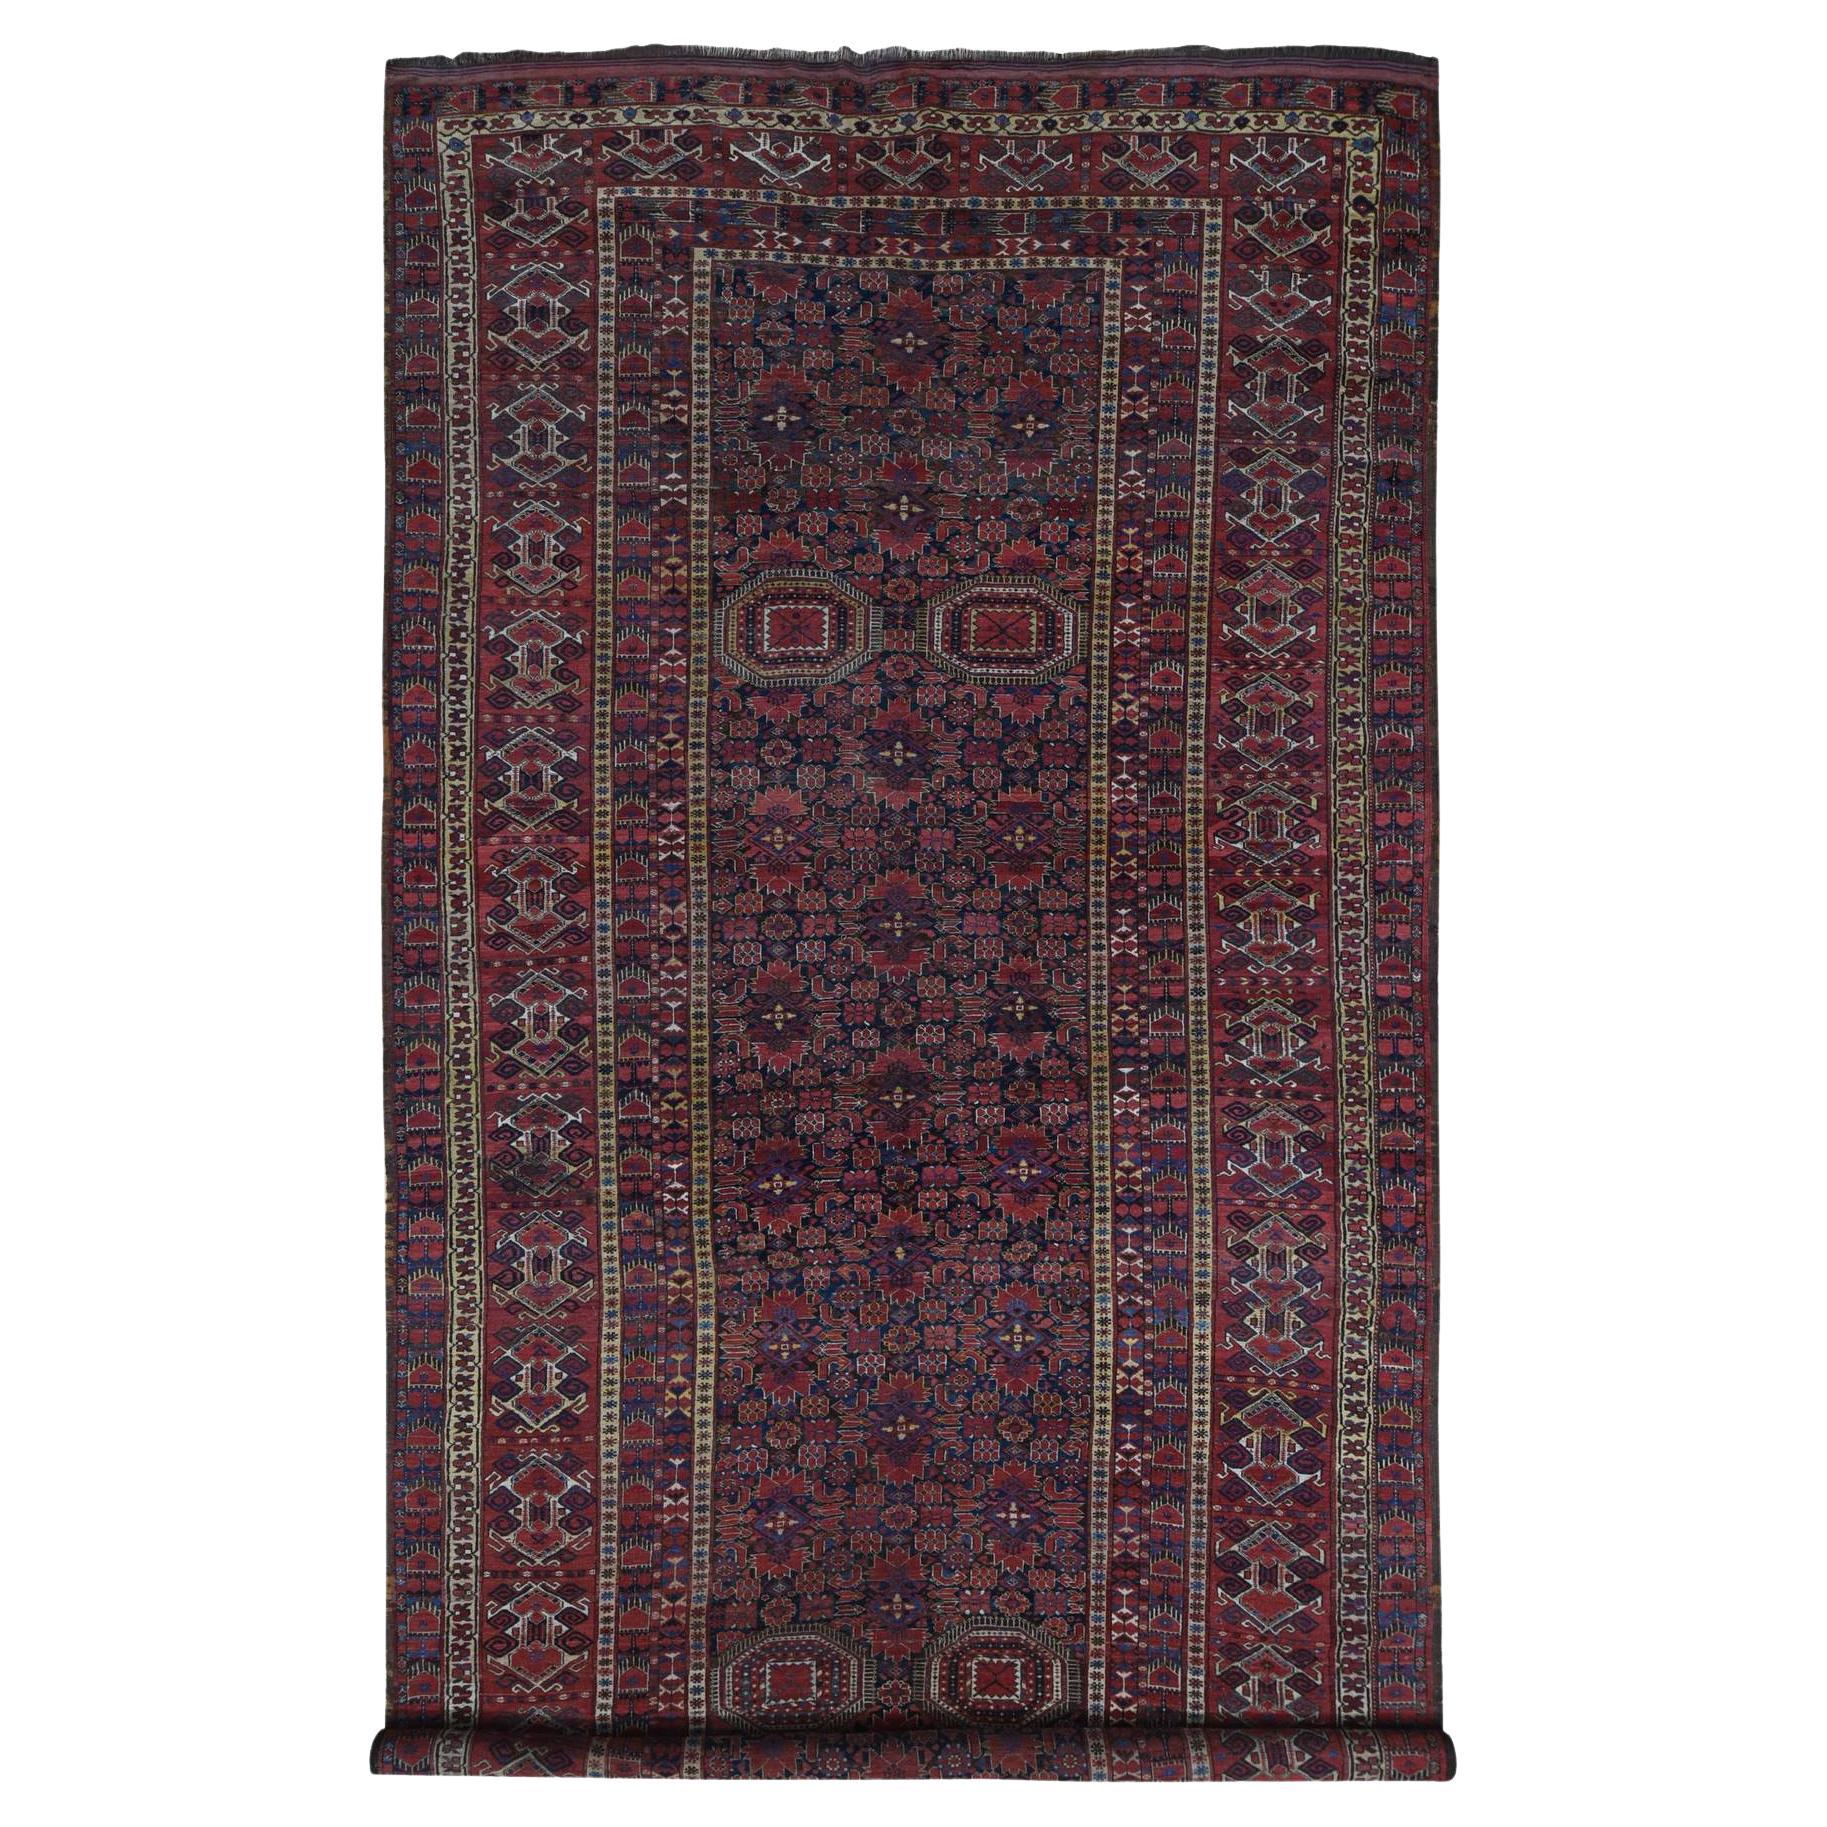 Mitternachtsblauer antiker Afghanischer Beshir handgeknüpfter Teppich aus reiner Wolle mit geometrischem Design